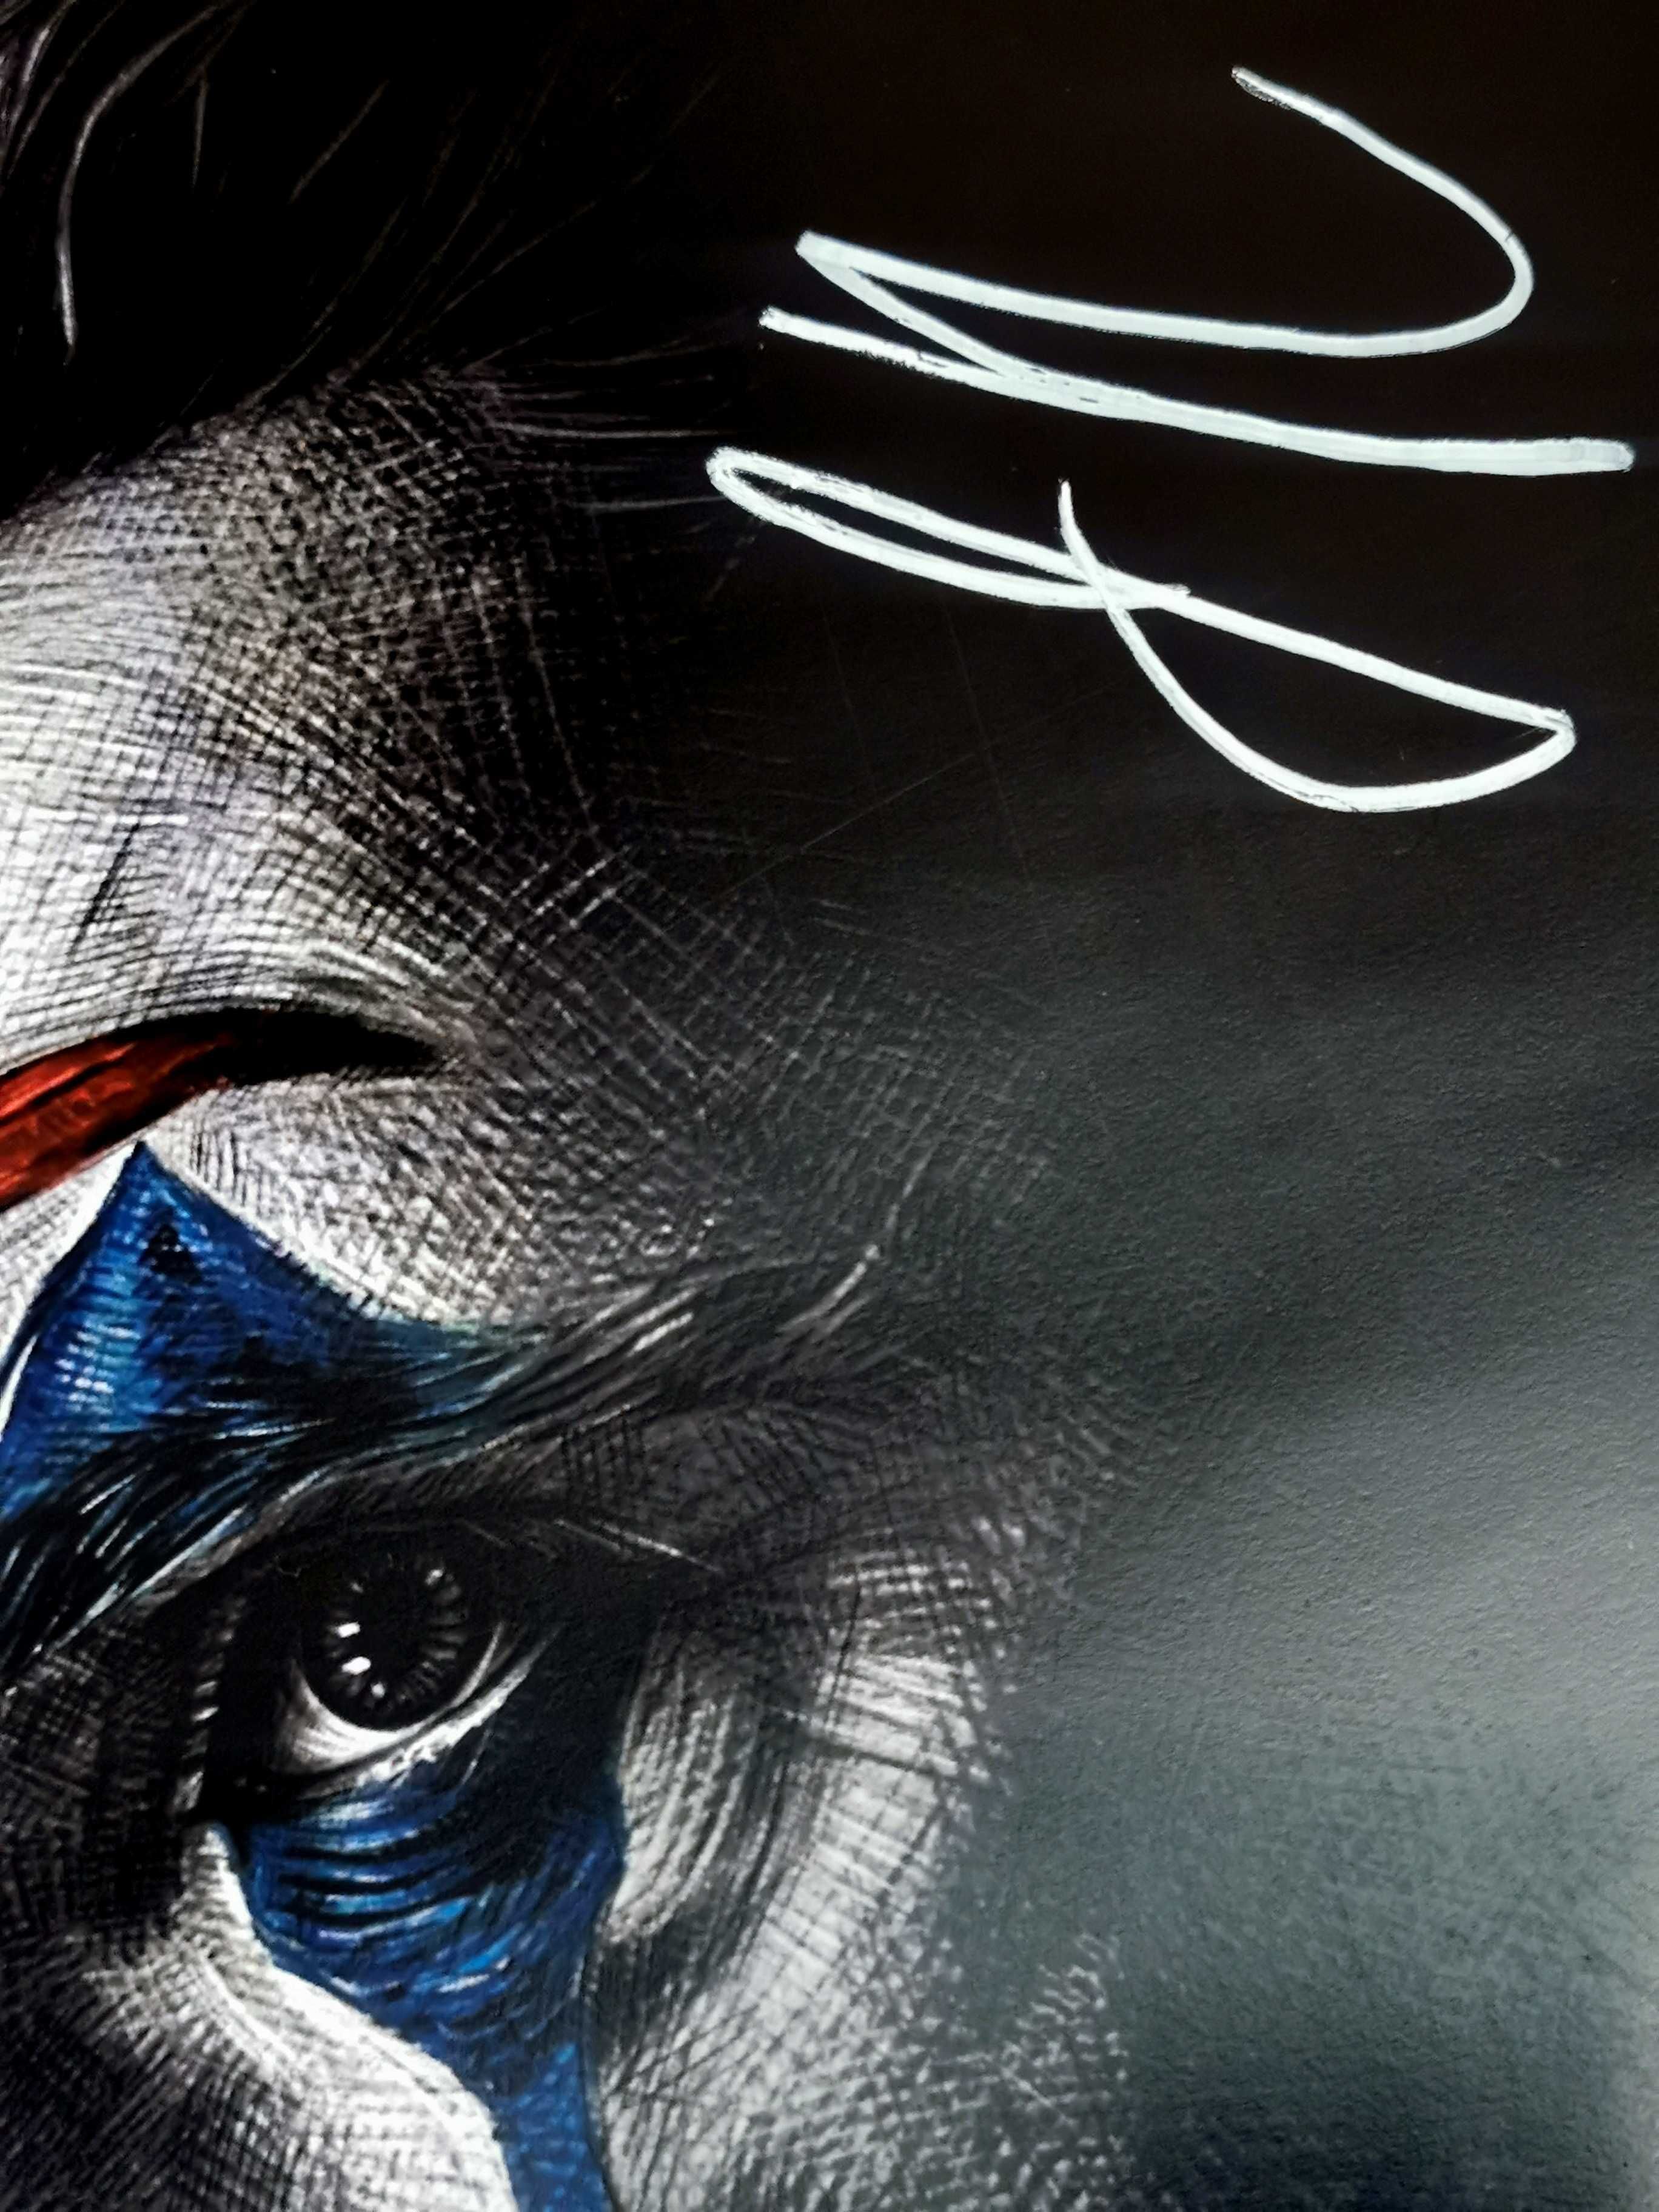 Плакат "Джокер" с автографом Хоакина Феникса и Тодда Филлипса